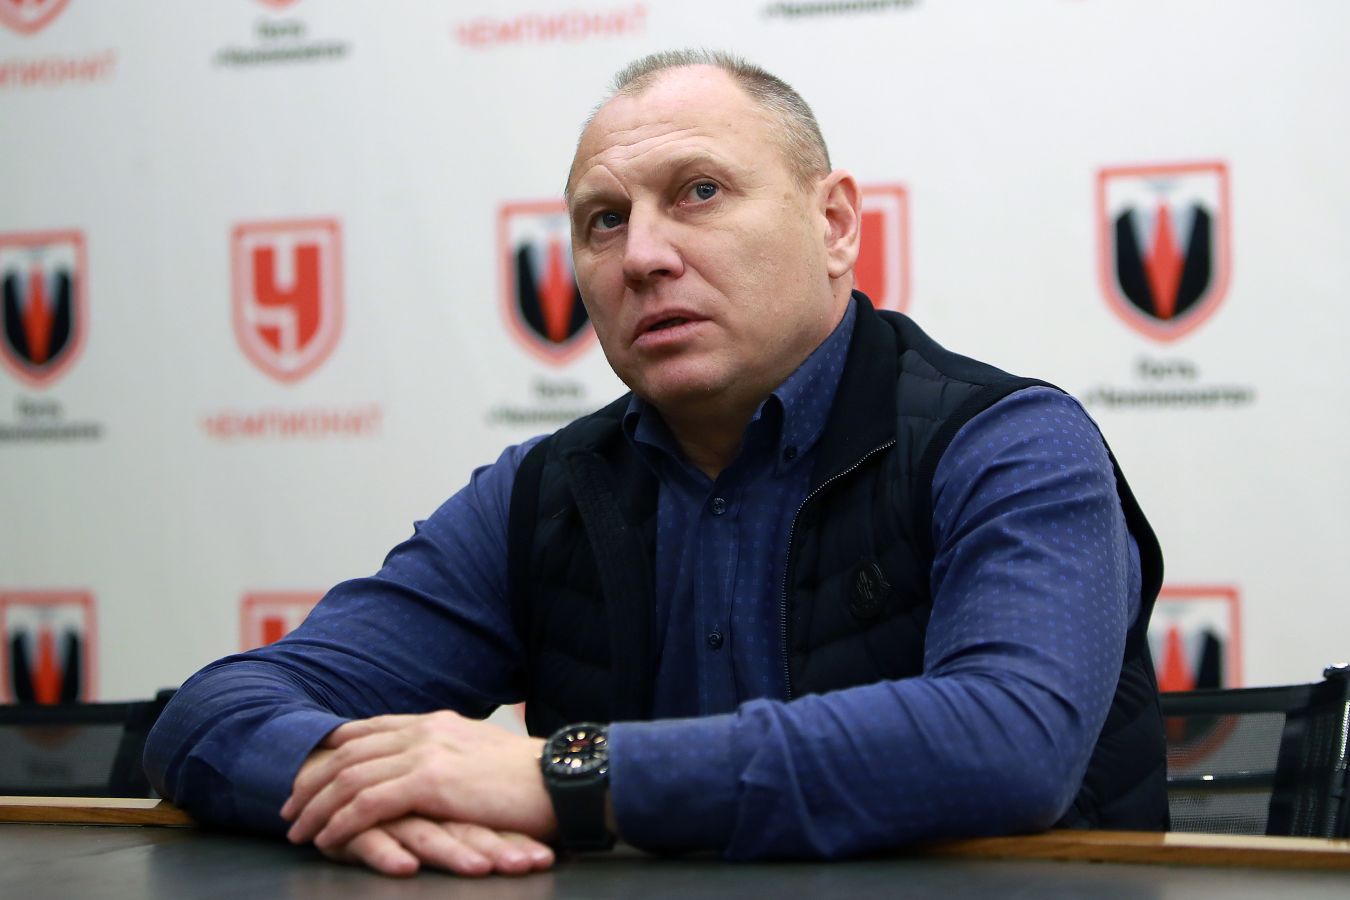 Дмитрий Черышев оценил перспективу перехода Дзюбы и Глушакова в «Пари НН».